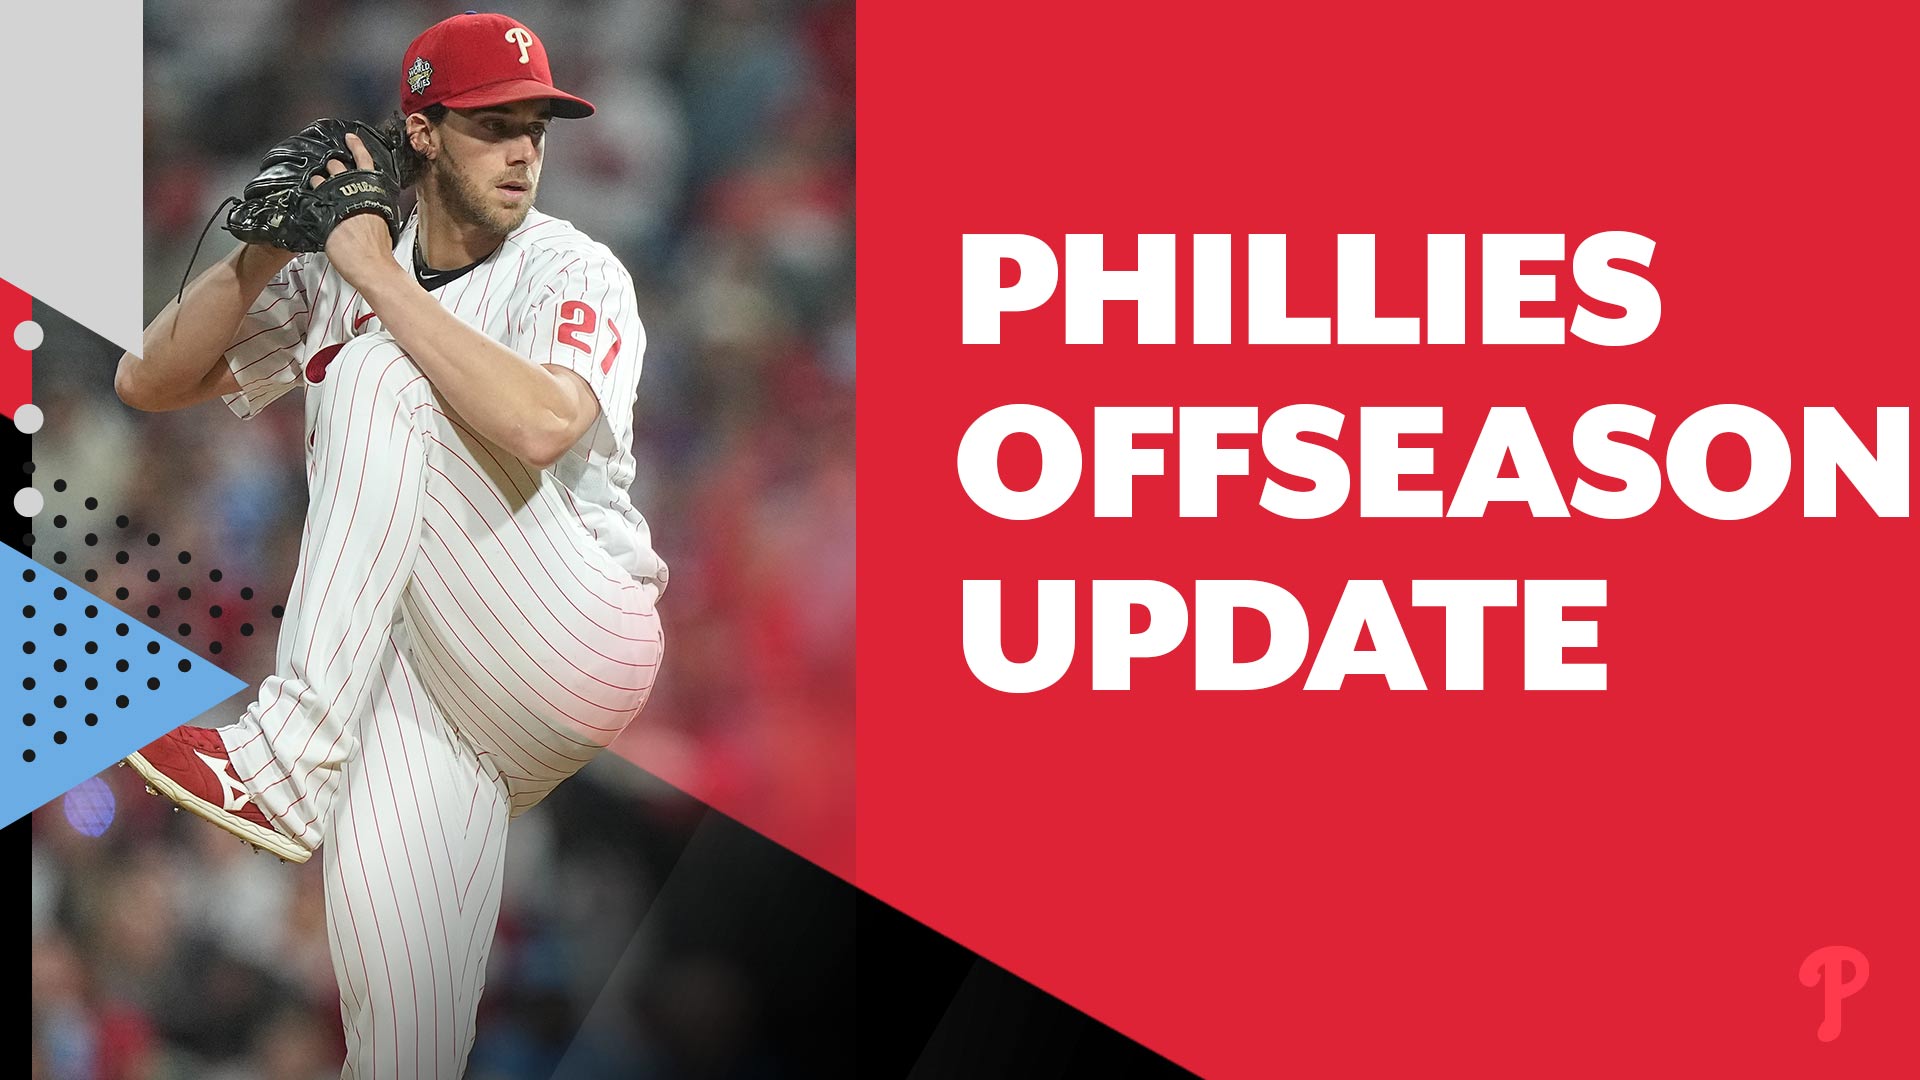 Phillies offseason update: Phillies pick up Aaron Nola's 2023